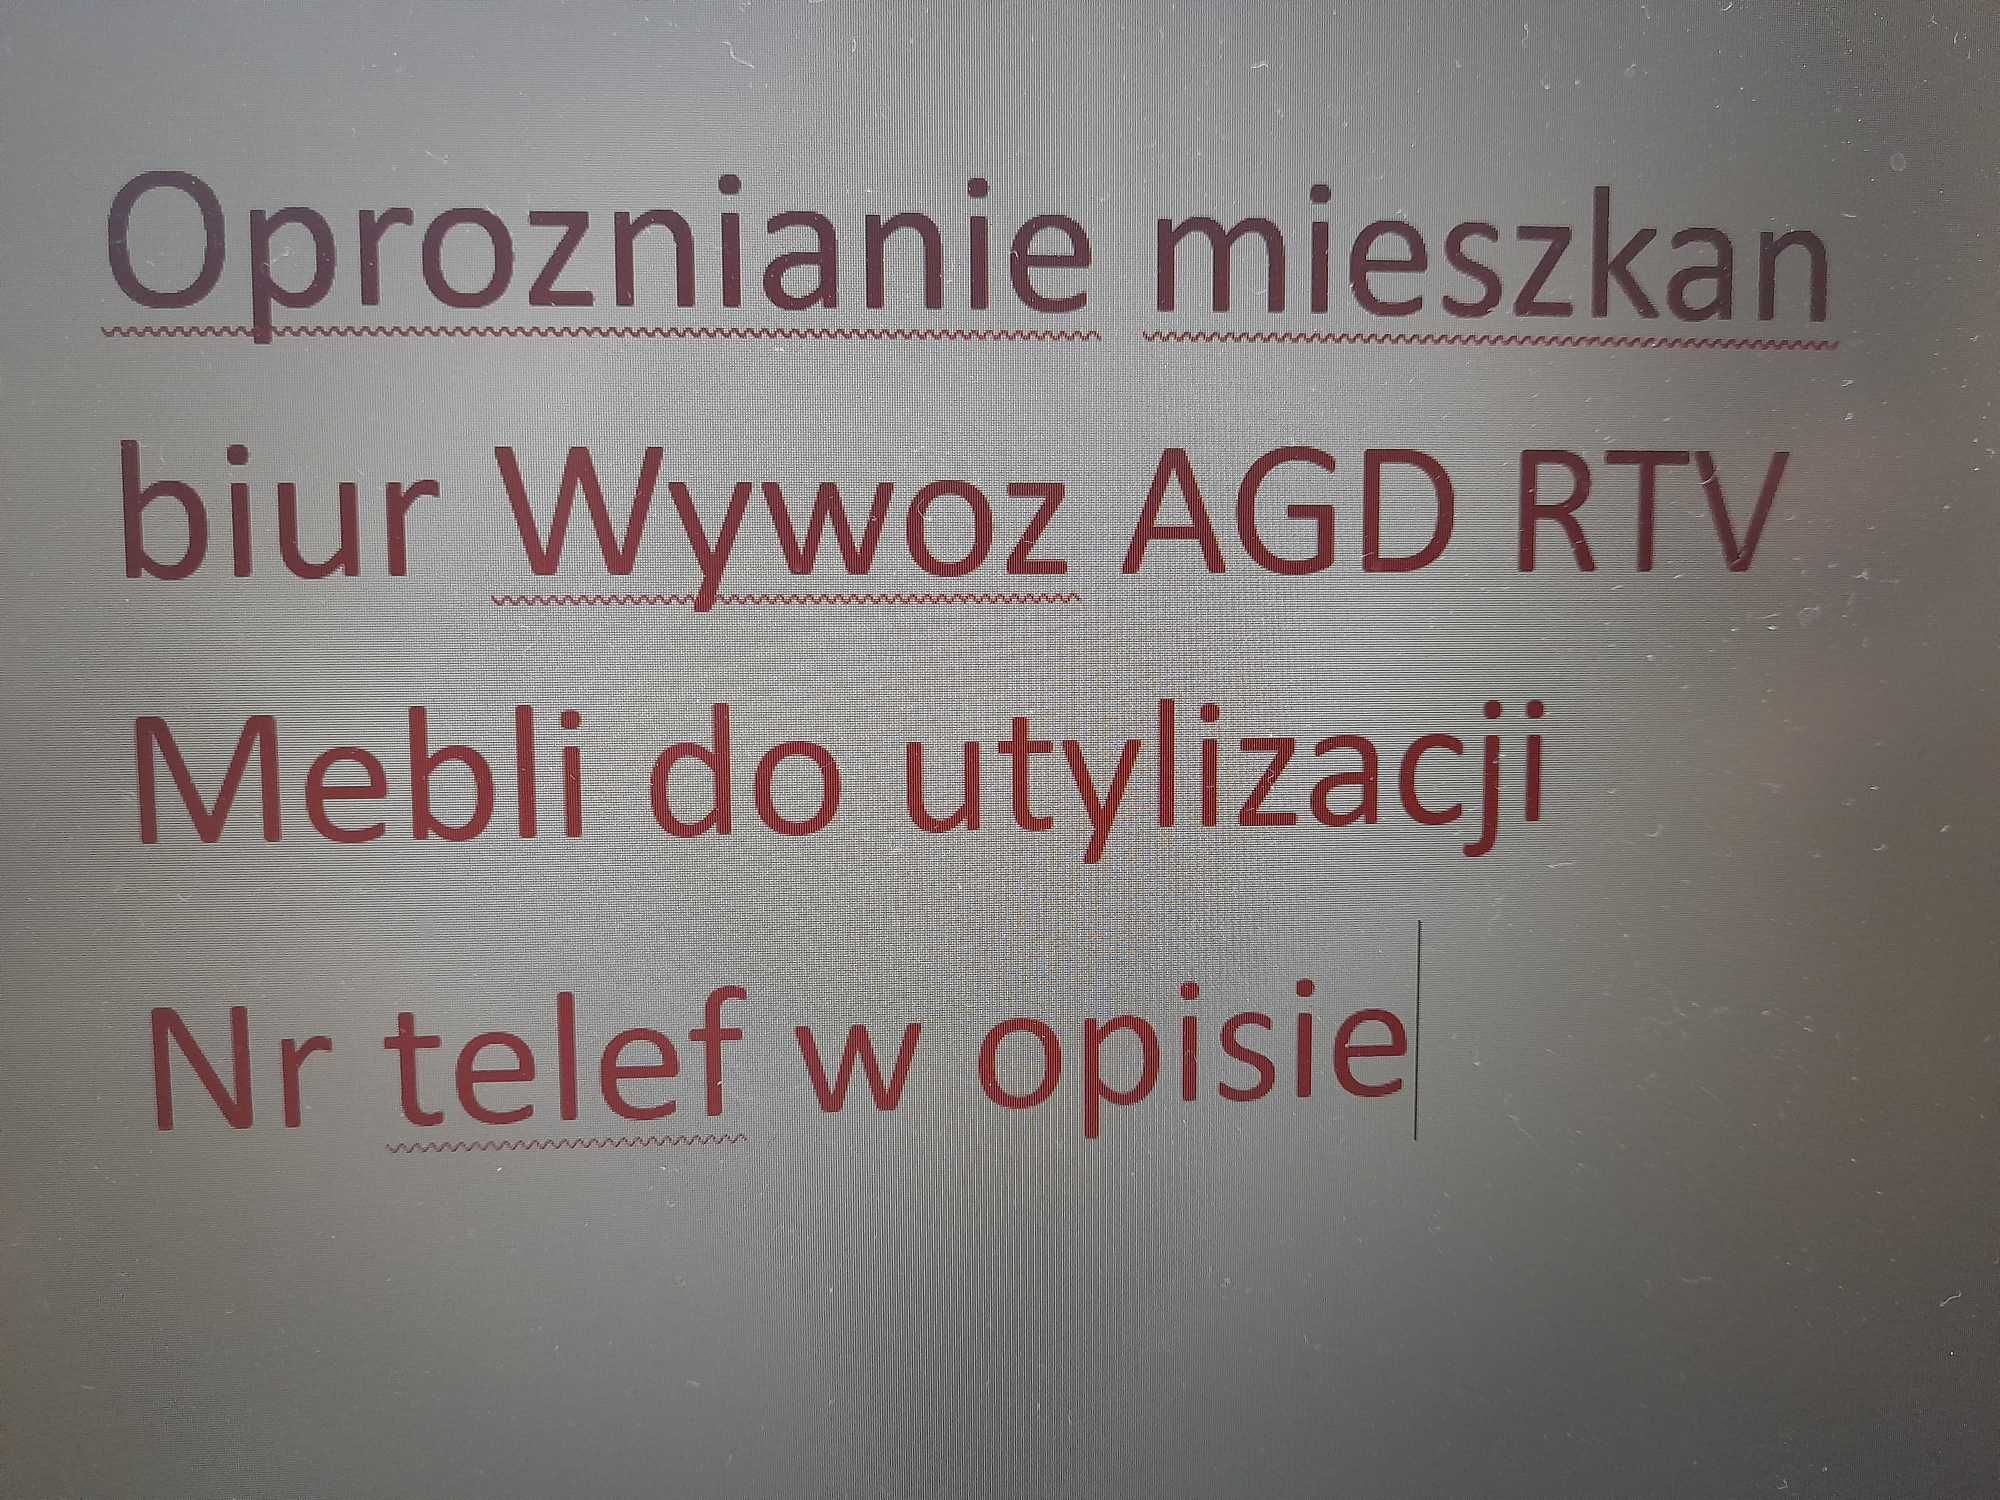 Oproznianie mieszkan biur Wywoz AGD RTV Mebli utylizacja Wodzislaw